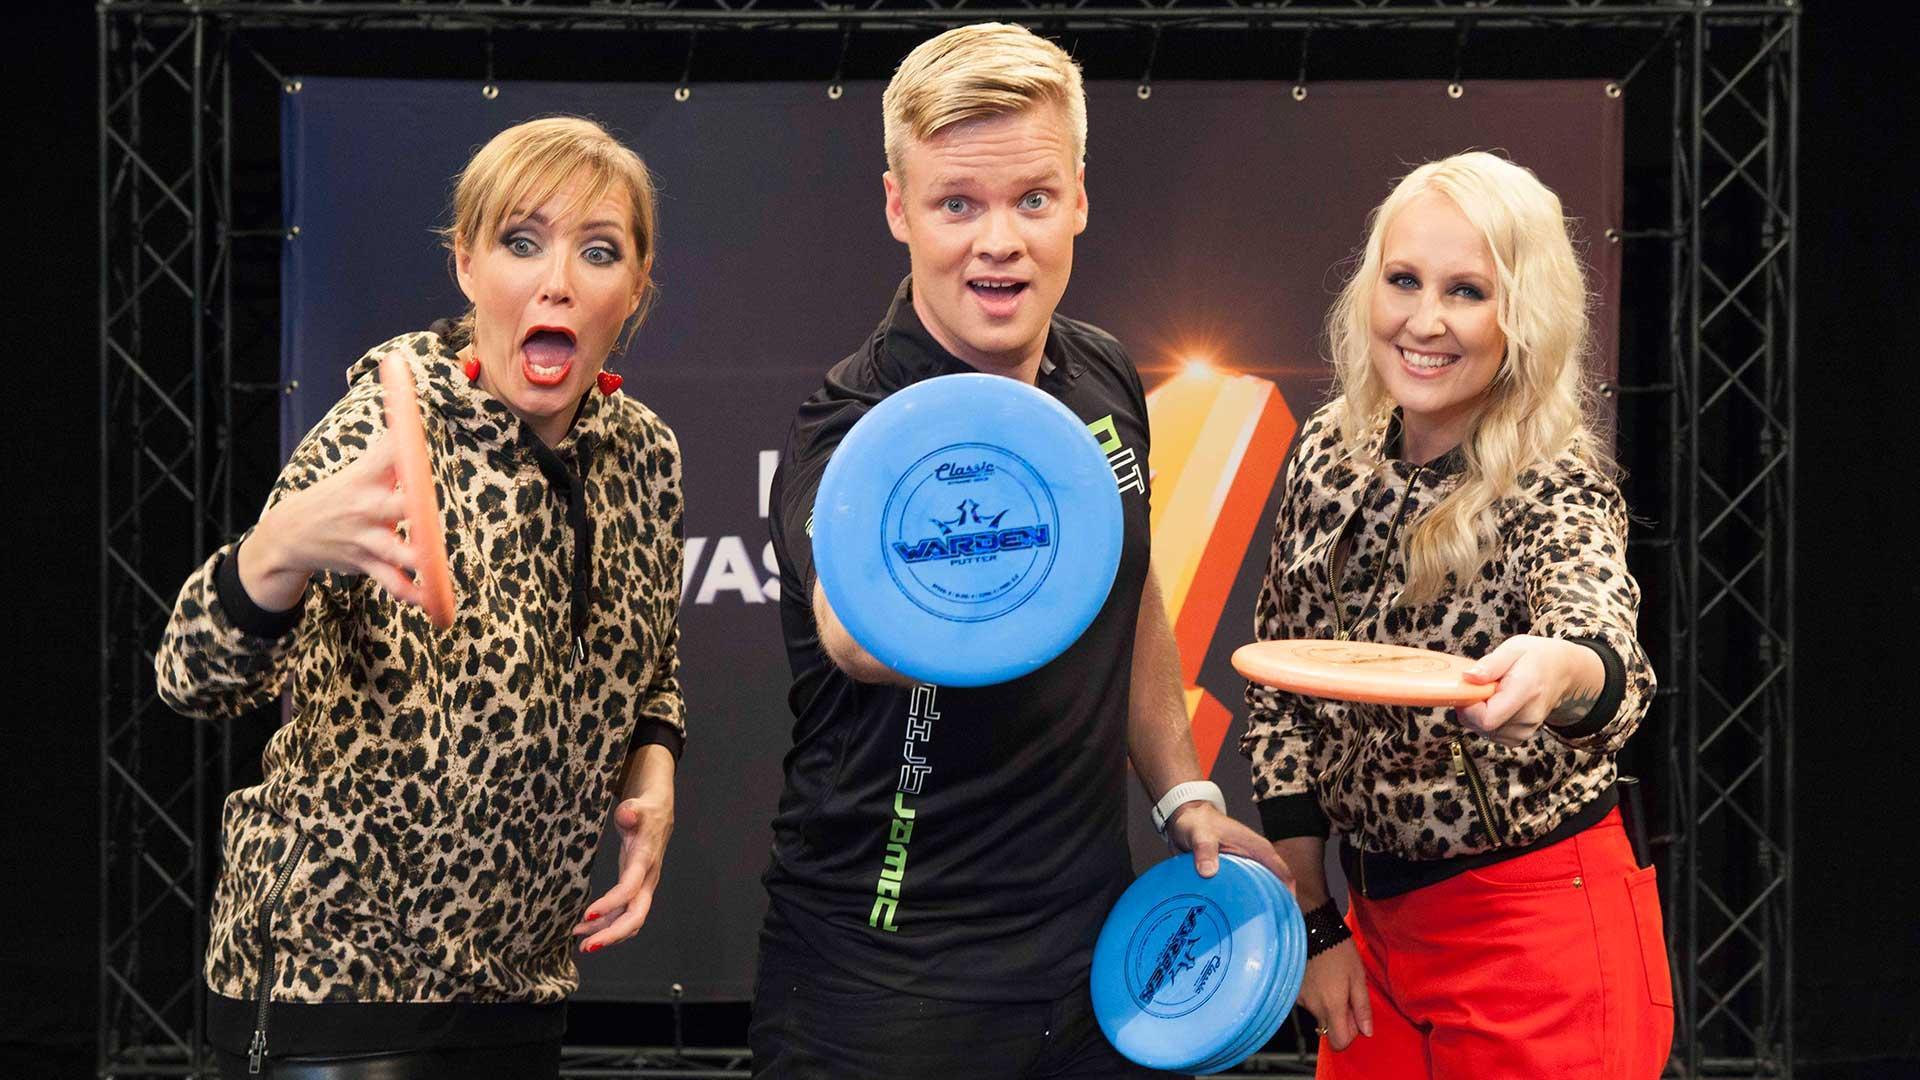 Huh, miten jännä finaalikierros – frisbeegolf-taiturin lautasnäytös saa haukkomaan henkeä!